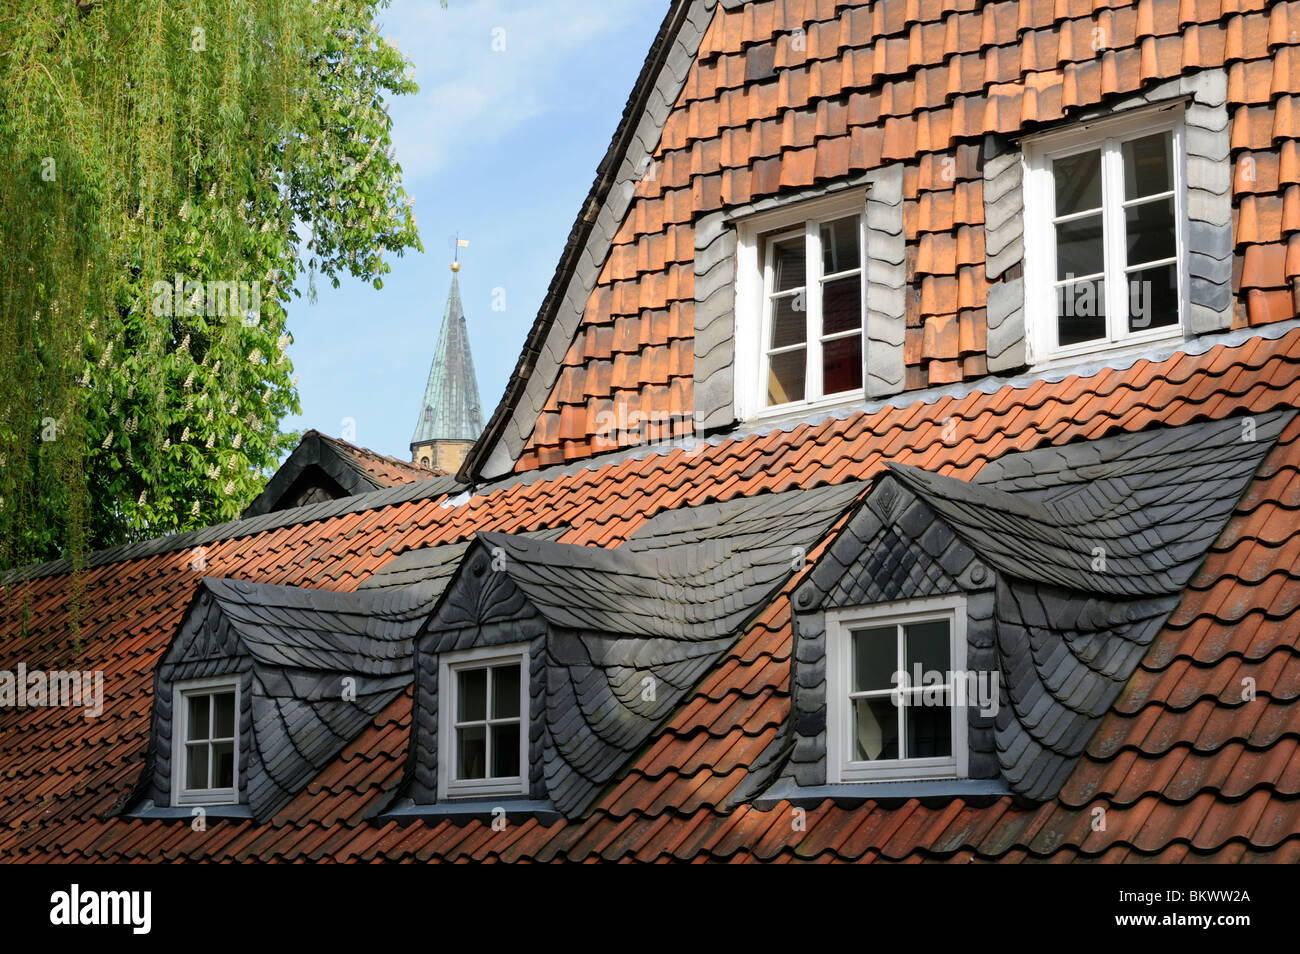 Typischer Baustil eines Hauses in Goslar, Deutschland. - Typical architectural style of the house in Goslar, Germany. Stock Photo